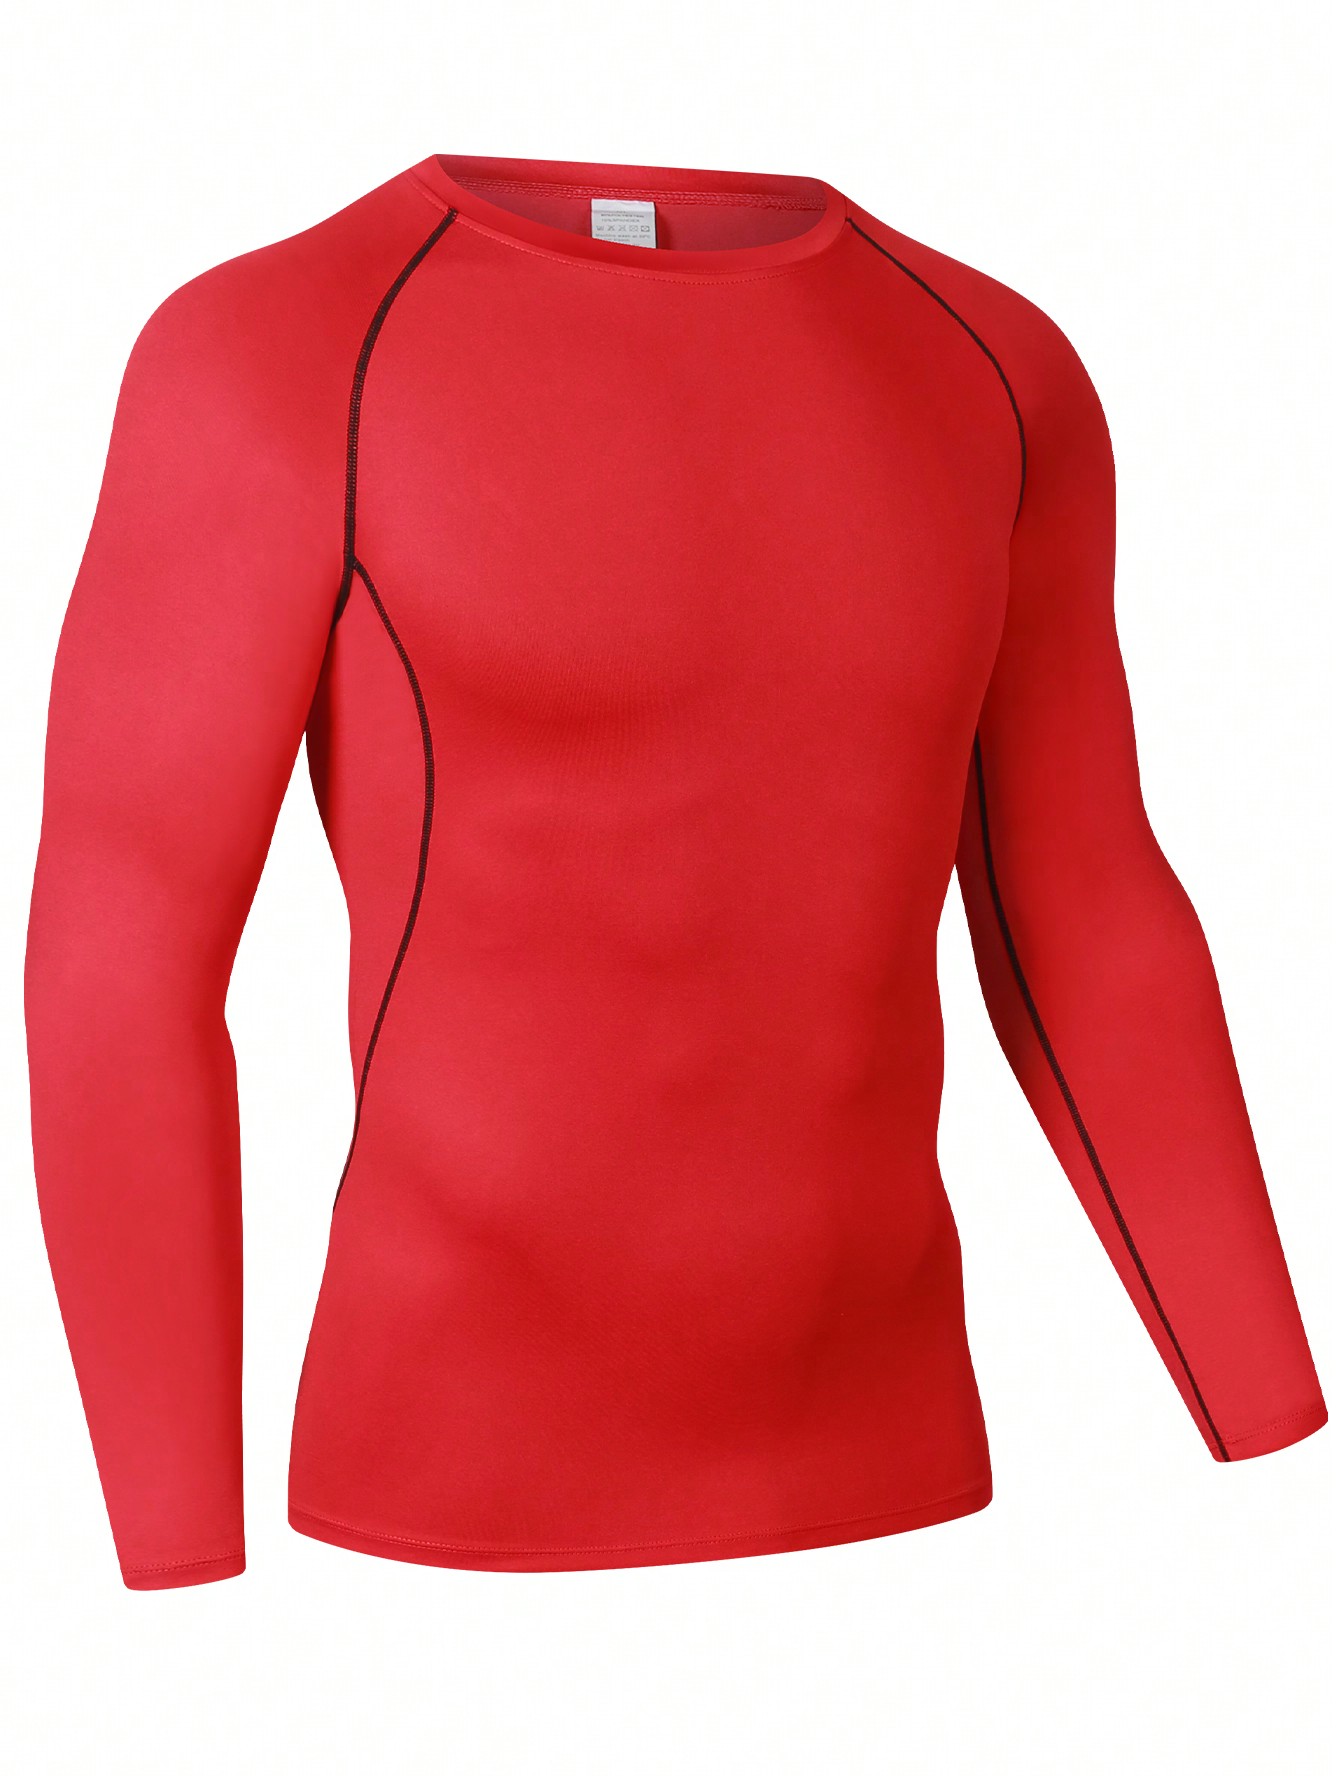 Мужская эластичная компрессионная рубашка для фитнеса с длинными рукавами, красный normov бесшовный женский костюм для фитнеса сексуальная контрастная цветная быстросохнущая спортивная одежда для тренировок спортивная оде